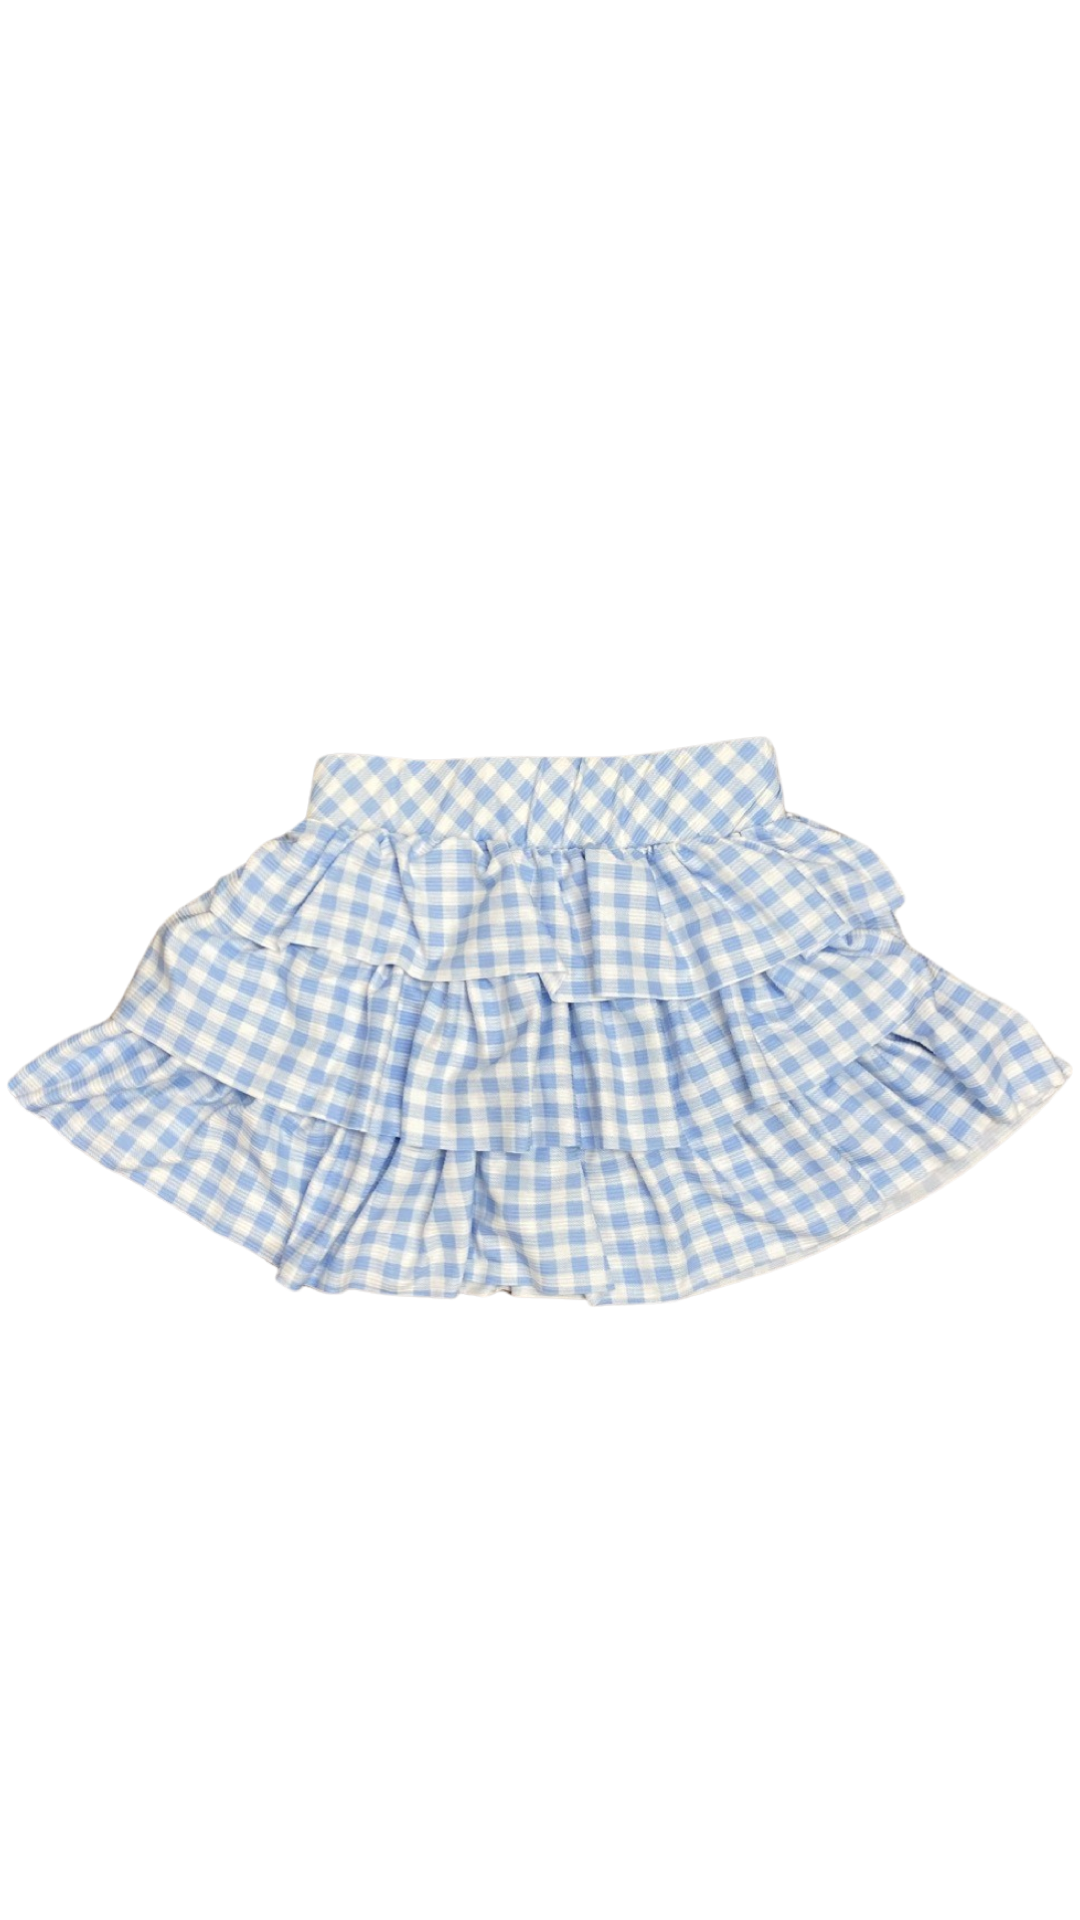 Girls- Erge Milano Stripe Ruffle Skirt